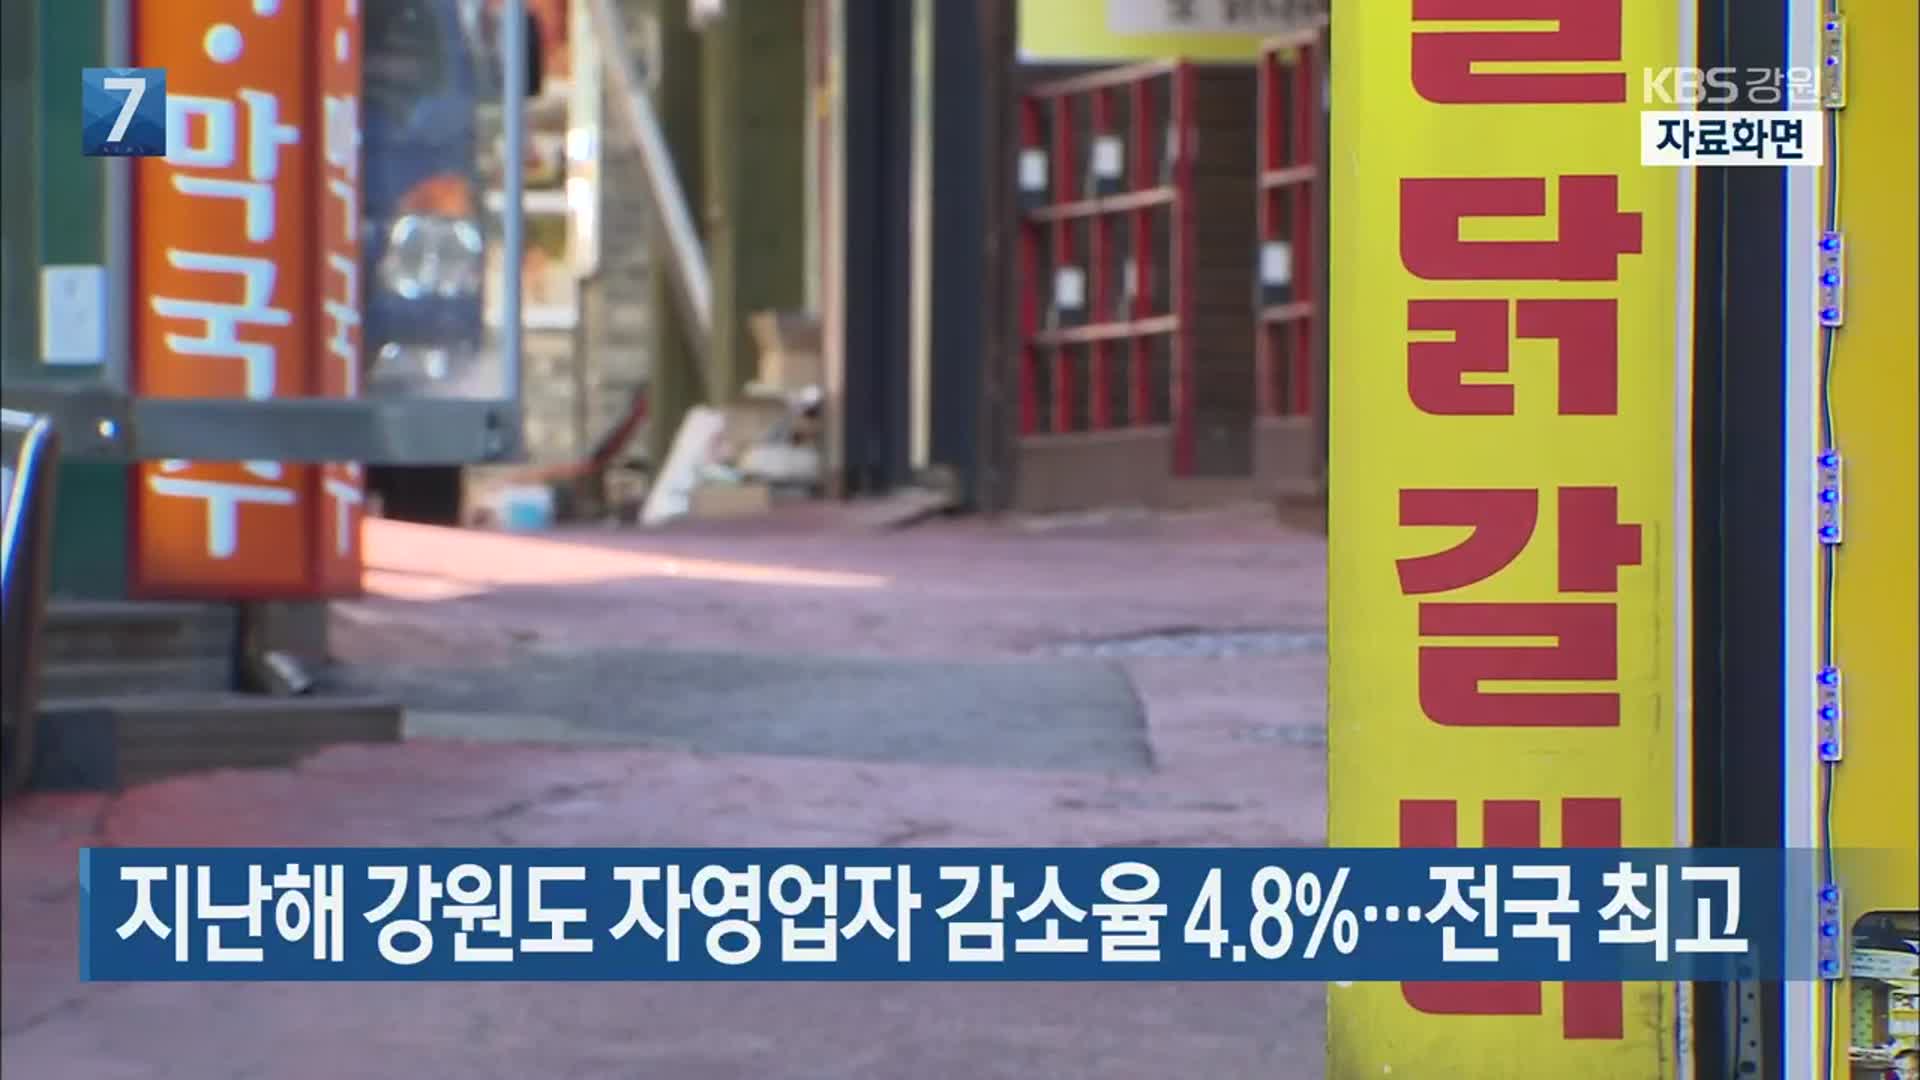 지난해 강원도 자영업자 감소율 4.8%…전국 최고